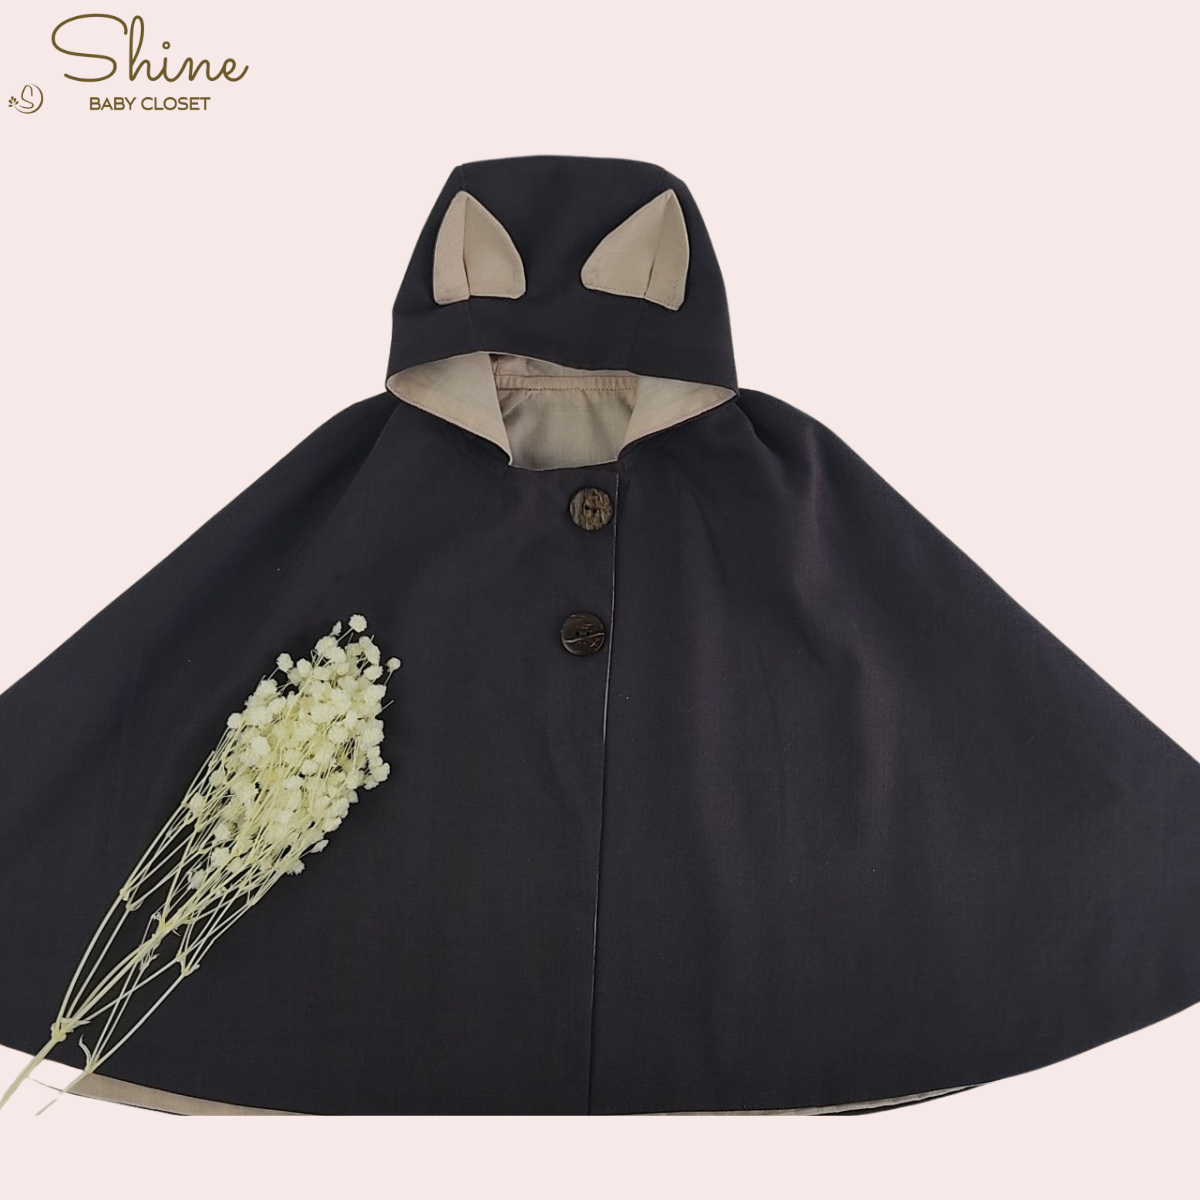 Áo khoác chống nắng bé trai bé gái Shine Baby Closet màu xám đen 2 lớp